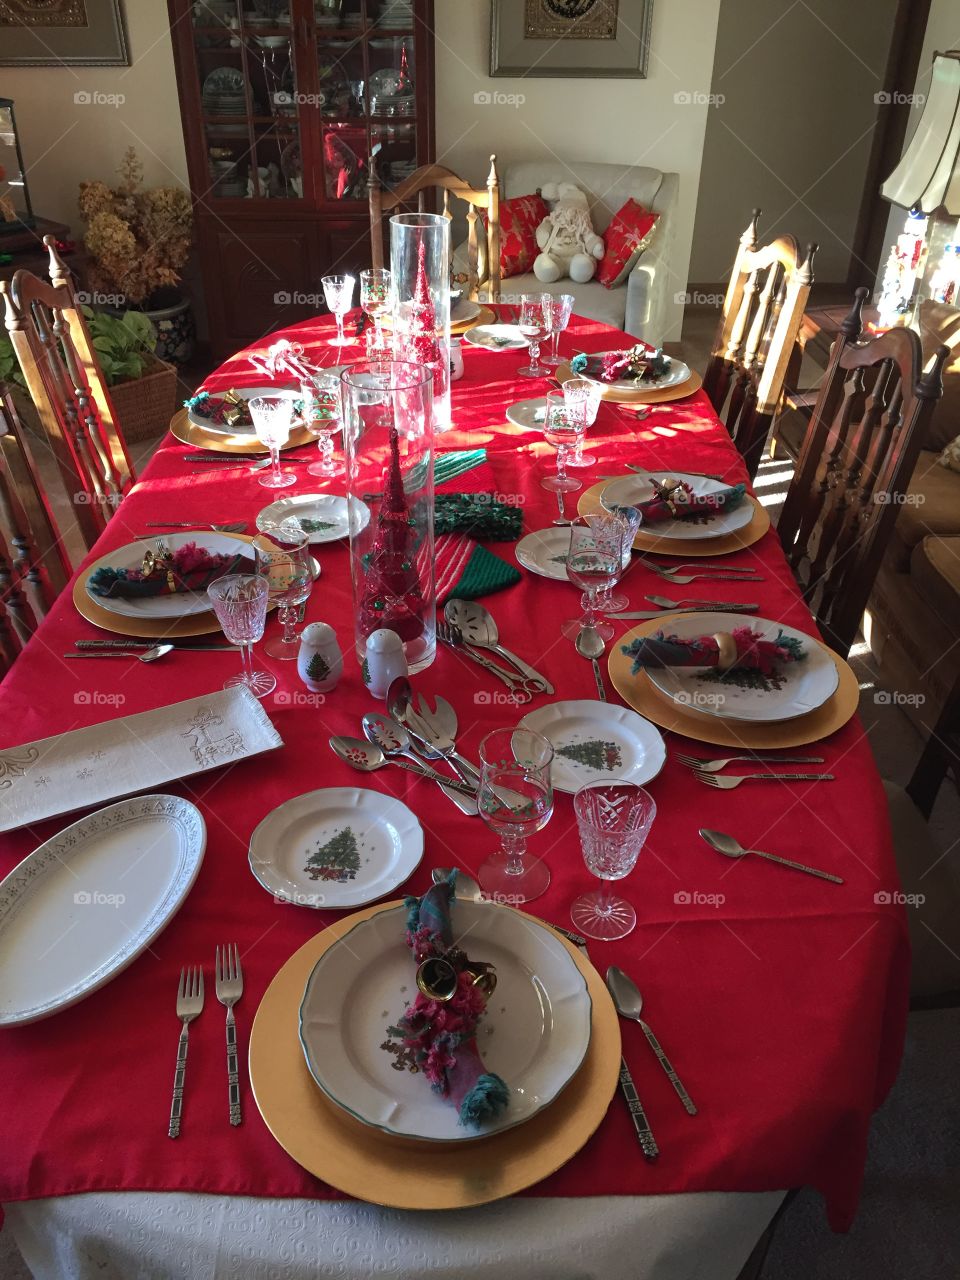 Grandmother's Christmas table setup